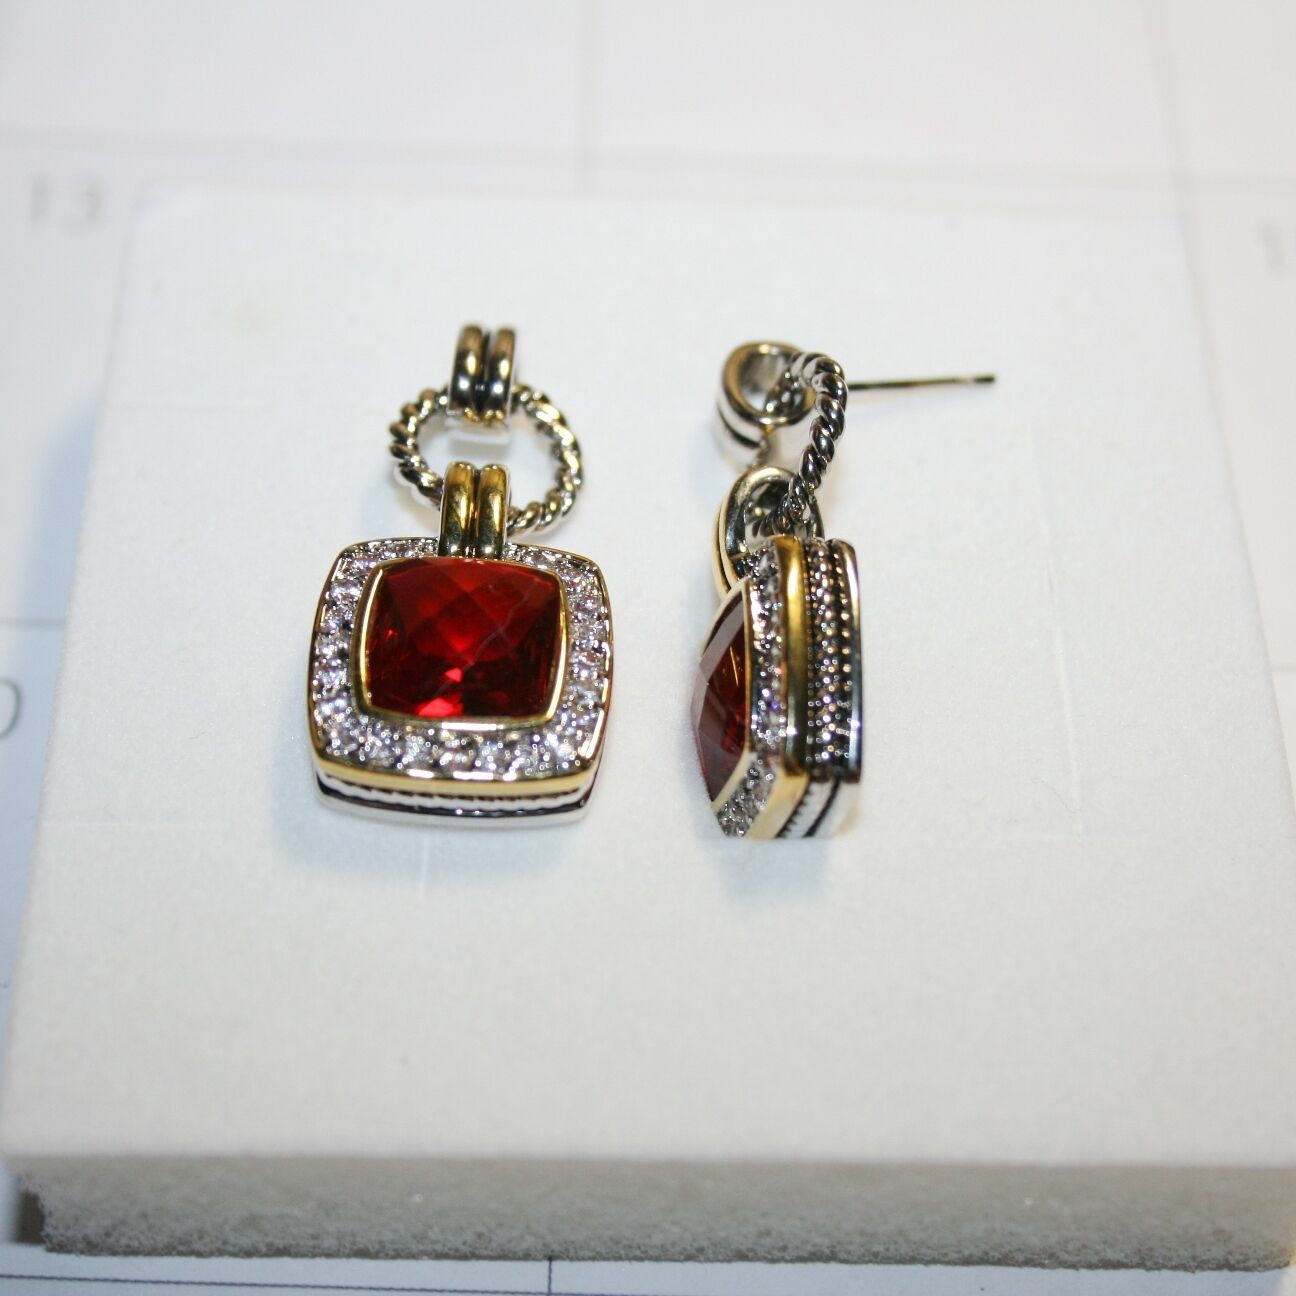 Primary image for Two Tone Red Garnet Quartz White Diamond Alternatives Dangle Earrings 35mm Long